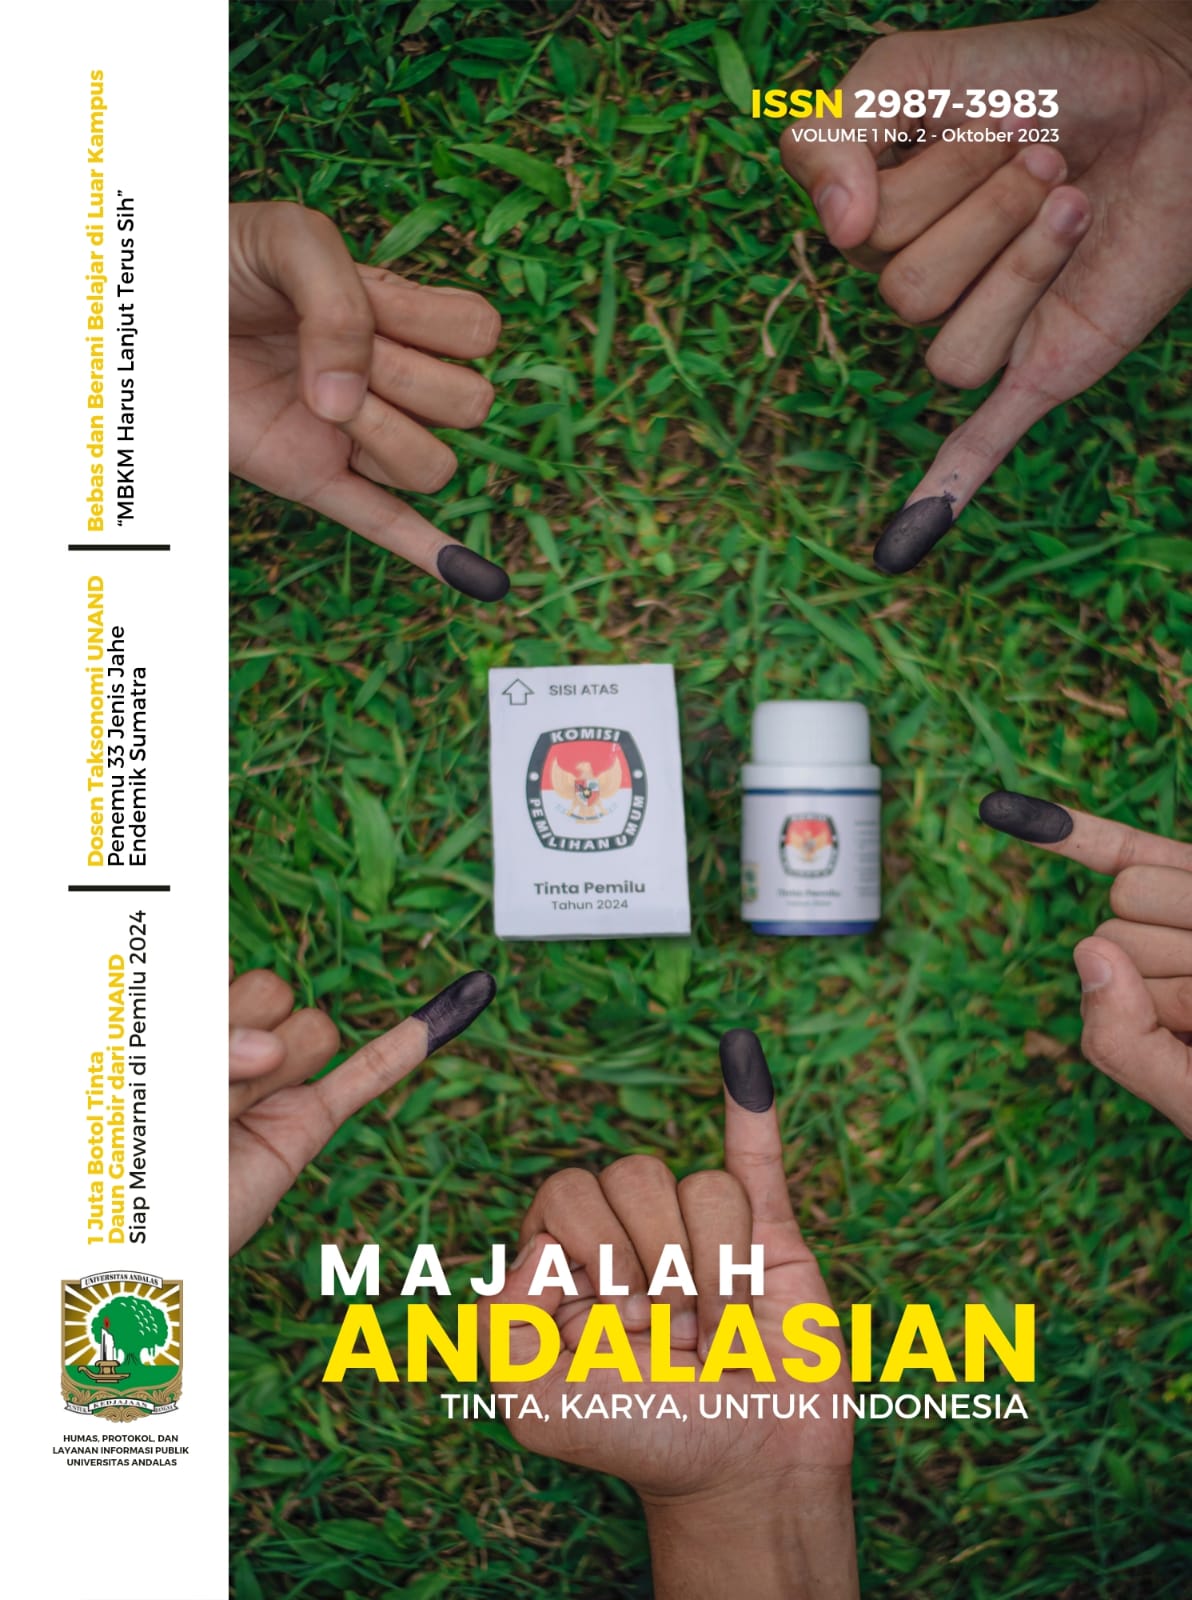 Majalah Andalasian Vol.1 No.2 "Tinta, Karya, untuk Indonesia"